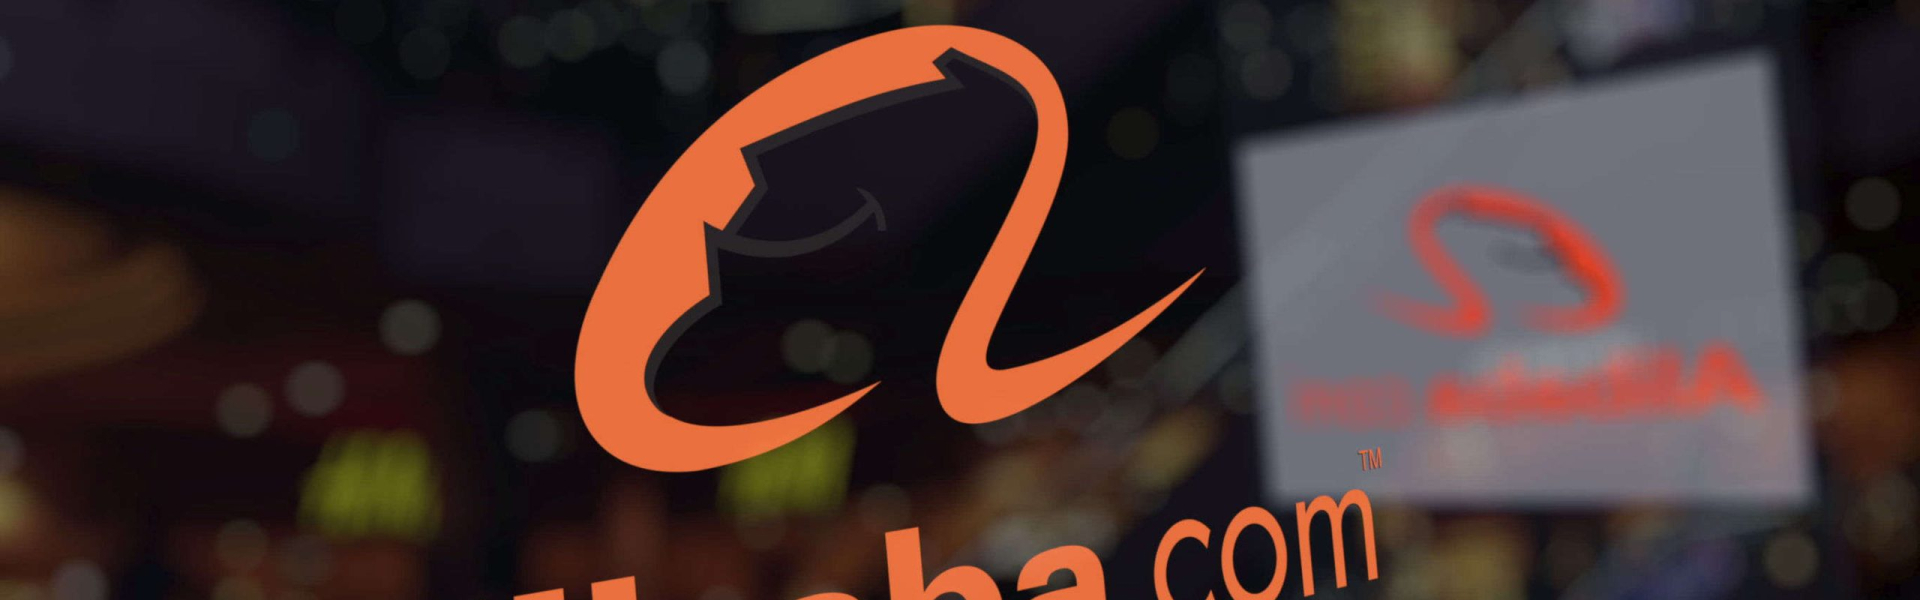 Cách tạo tài khoản bán hàng trên Alibaba nhanh chóng